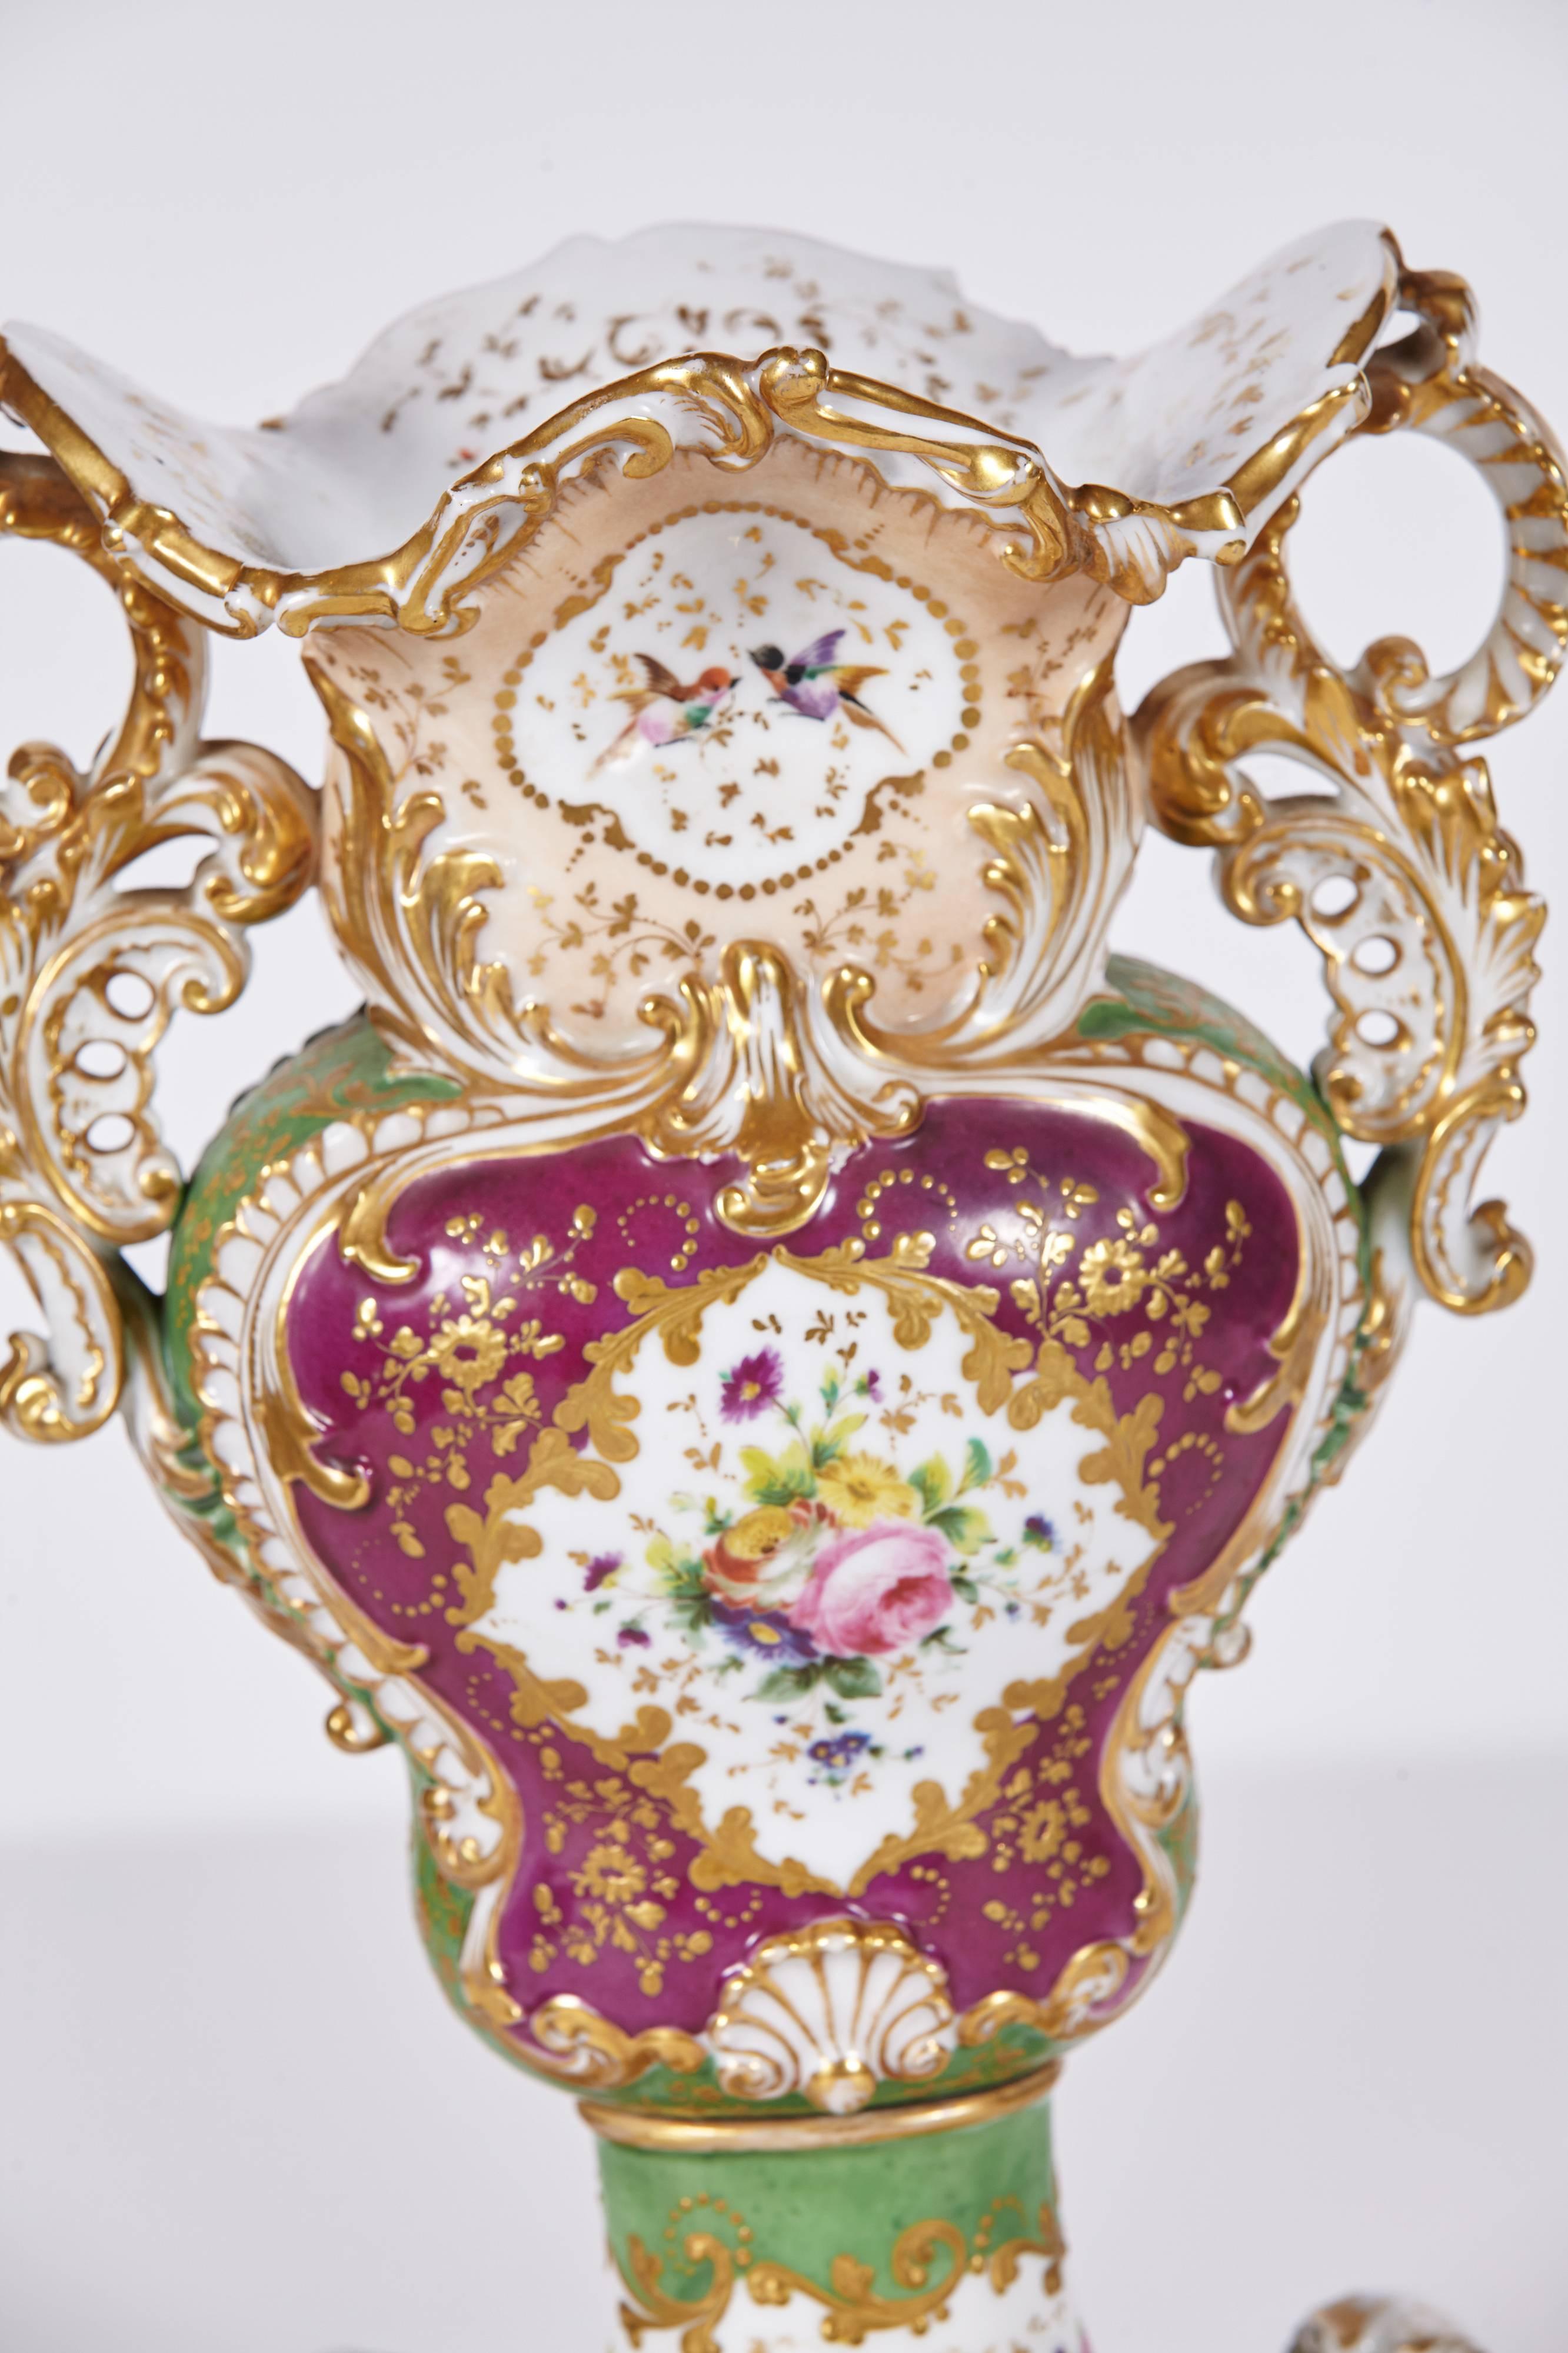 Schönes Paar Vasen aus altem Pariser Porzellan, signiert von Jacob Petit. Vasen im Rokokostil in Violett-, Grün- und Staubrosatönen, die mit originalen Messingschrauben auf passenden Sockeln montiert sind. Die Reserven sind von Hand mit Vögeln und